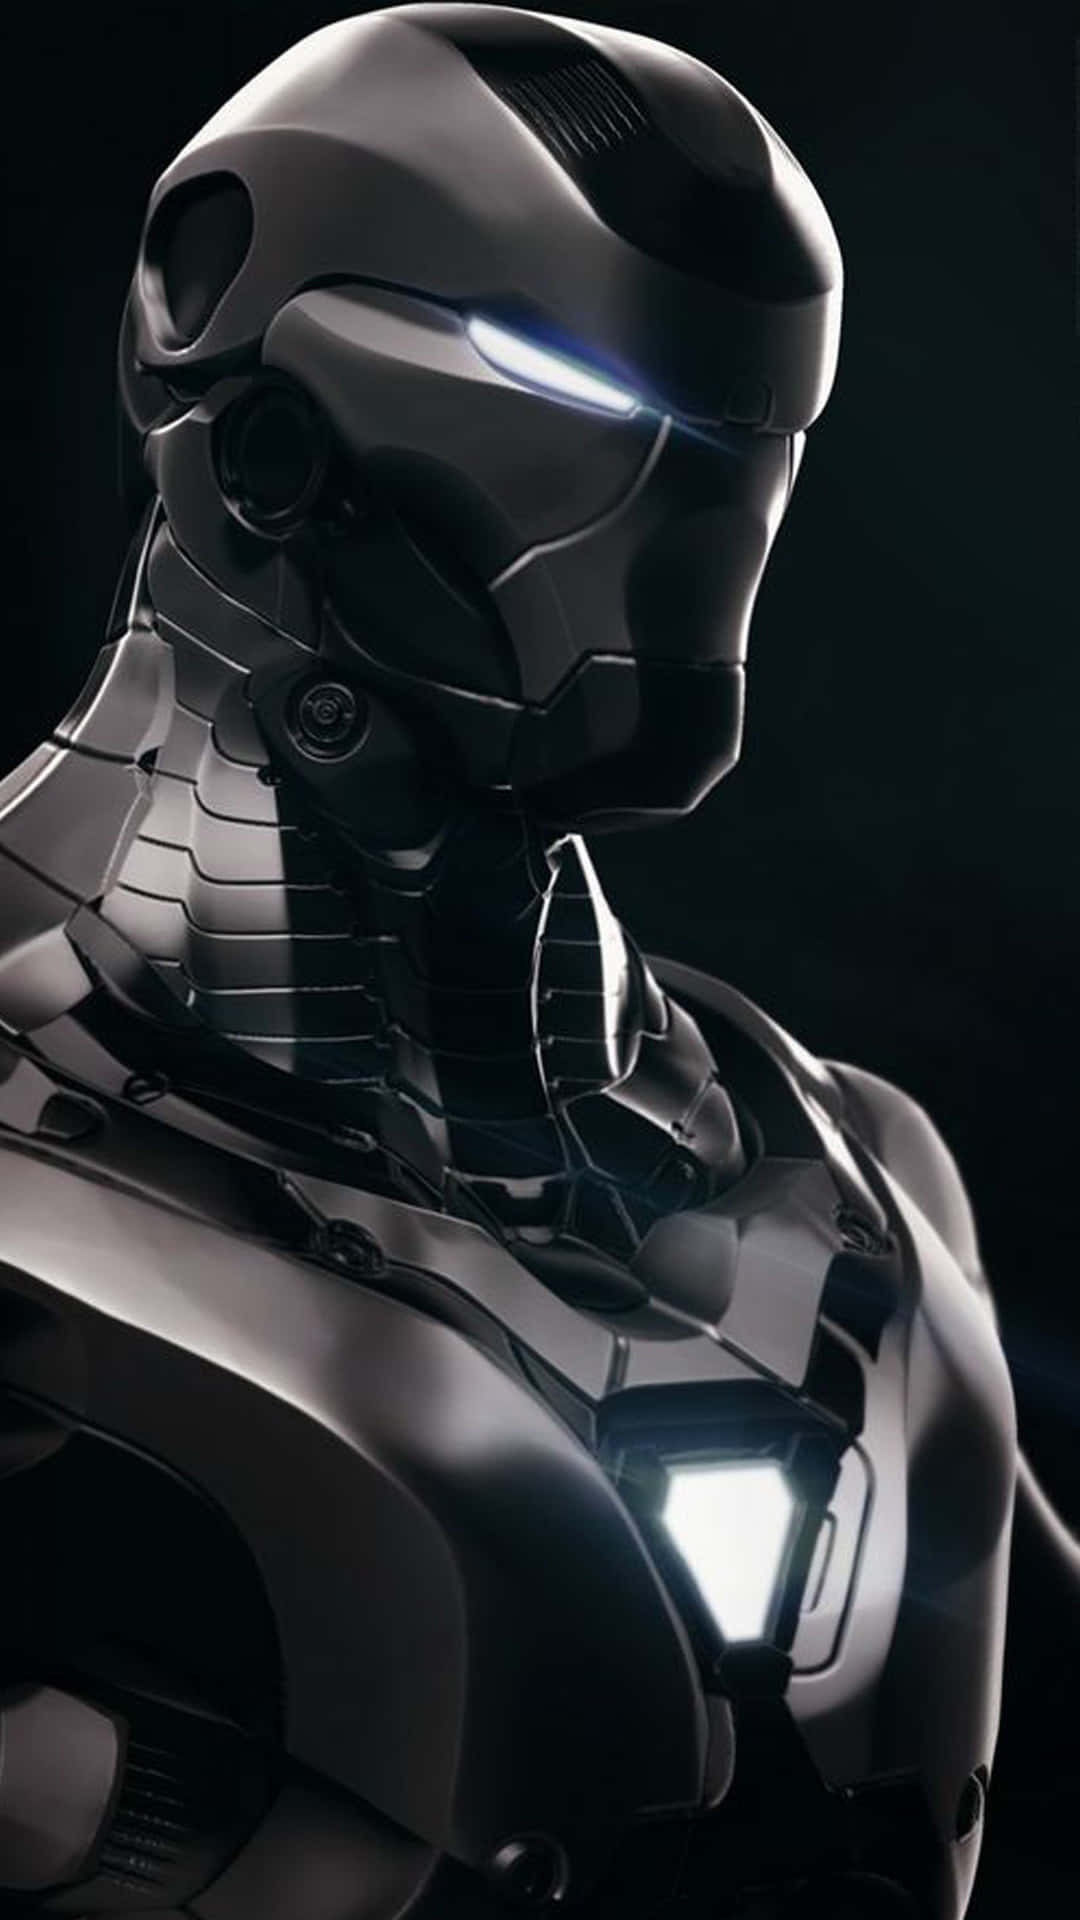 Fondode Pantalla Genial Para Iphone Con Un Primer Plano De Iron Man En Negro Fondo de pantalla